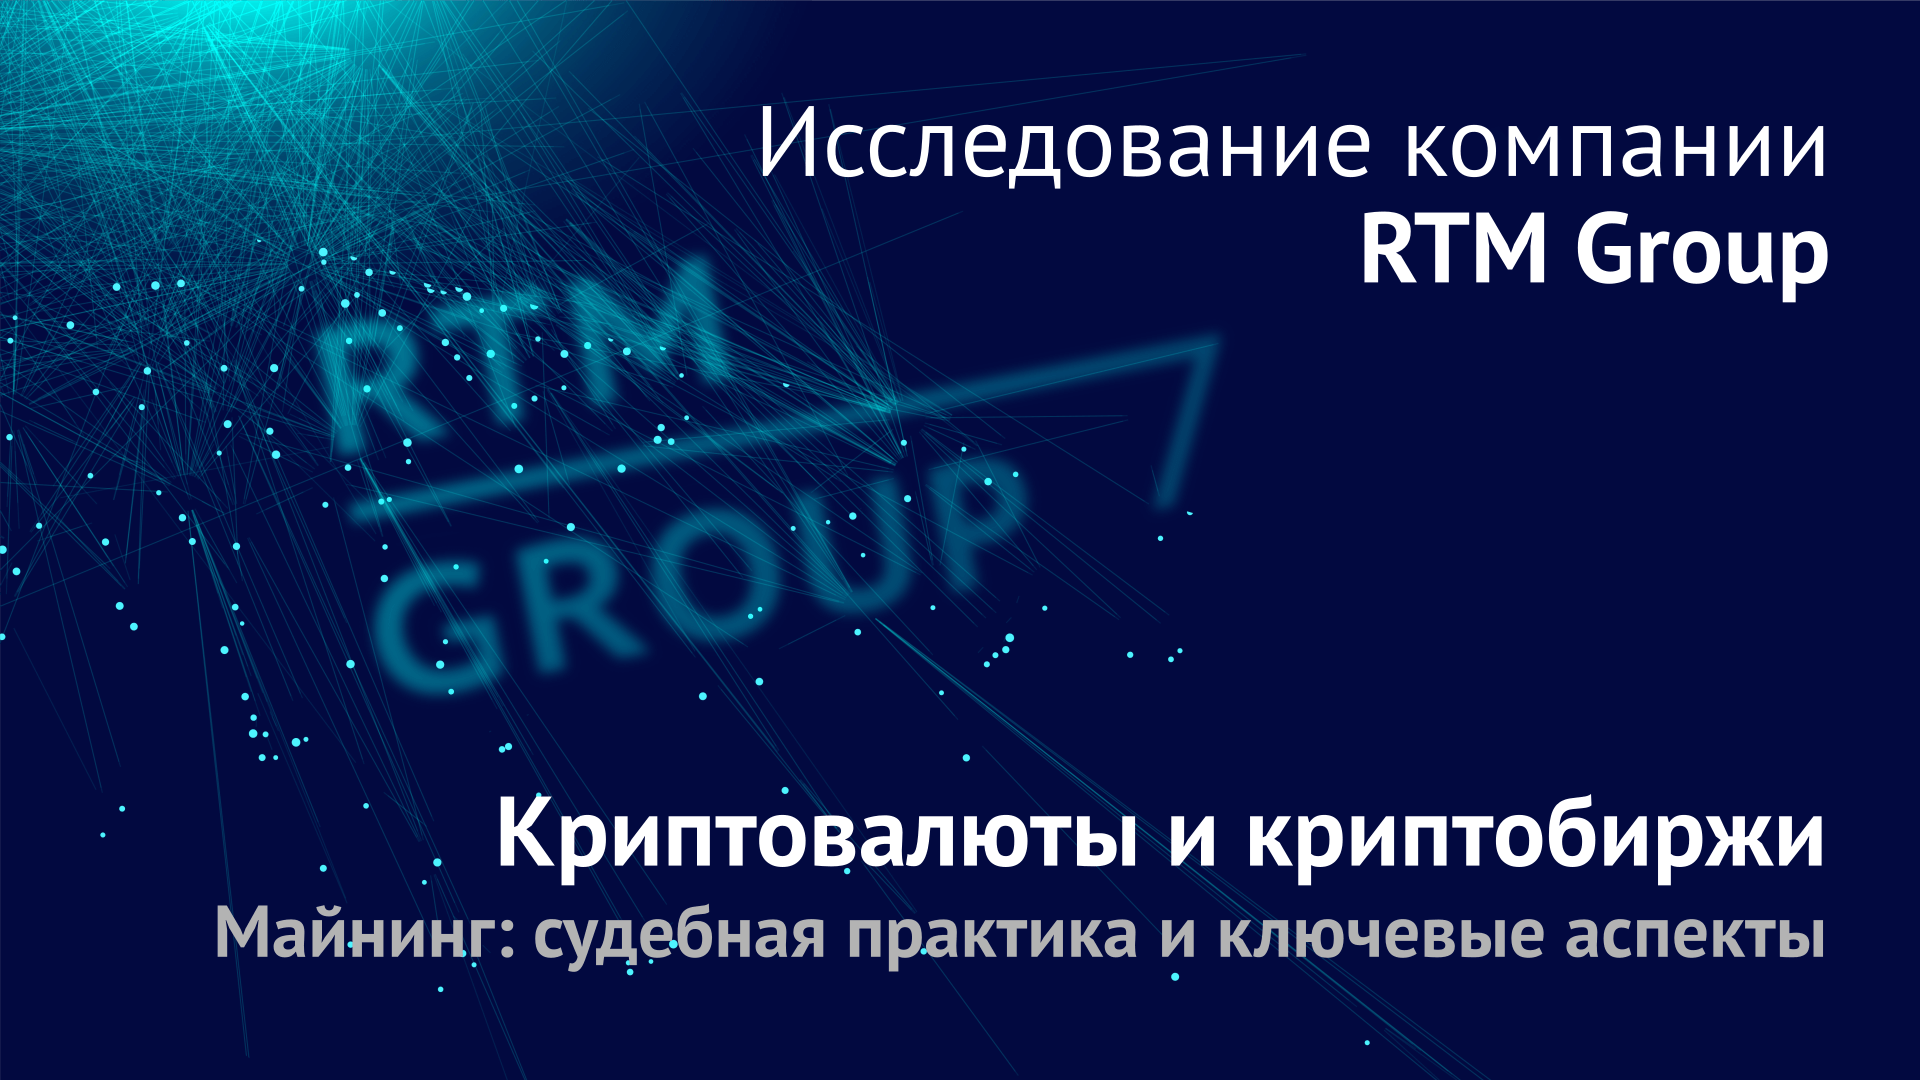 RTM Group представляет новое исследование, посвященное судебной практике по криптовалюте и криптобиржам и майнингу